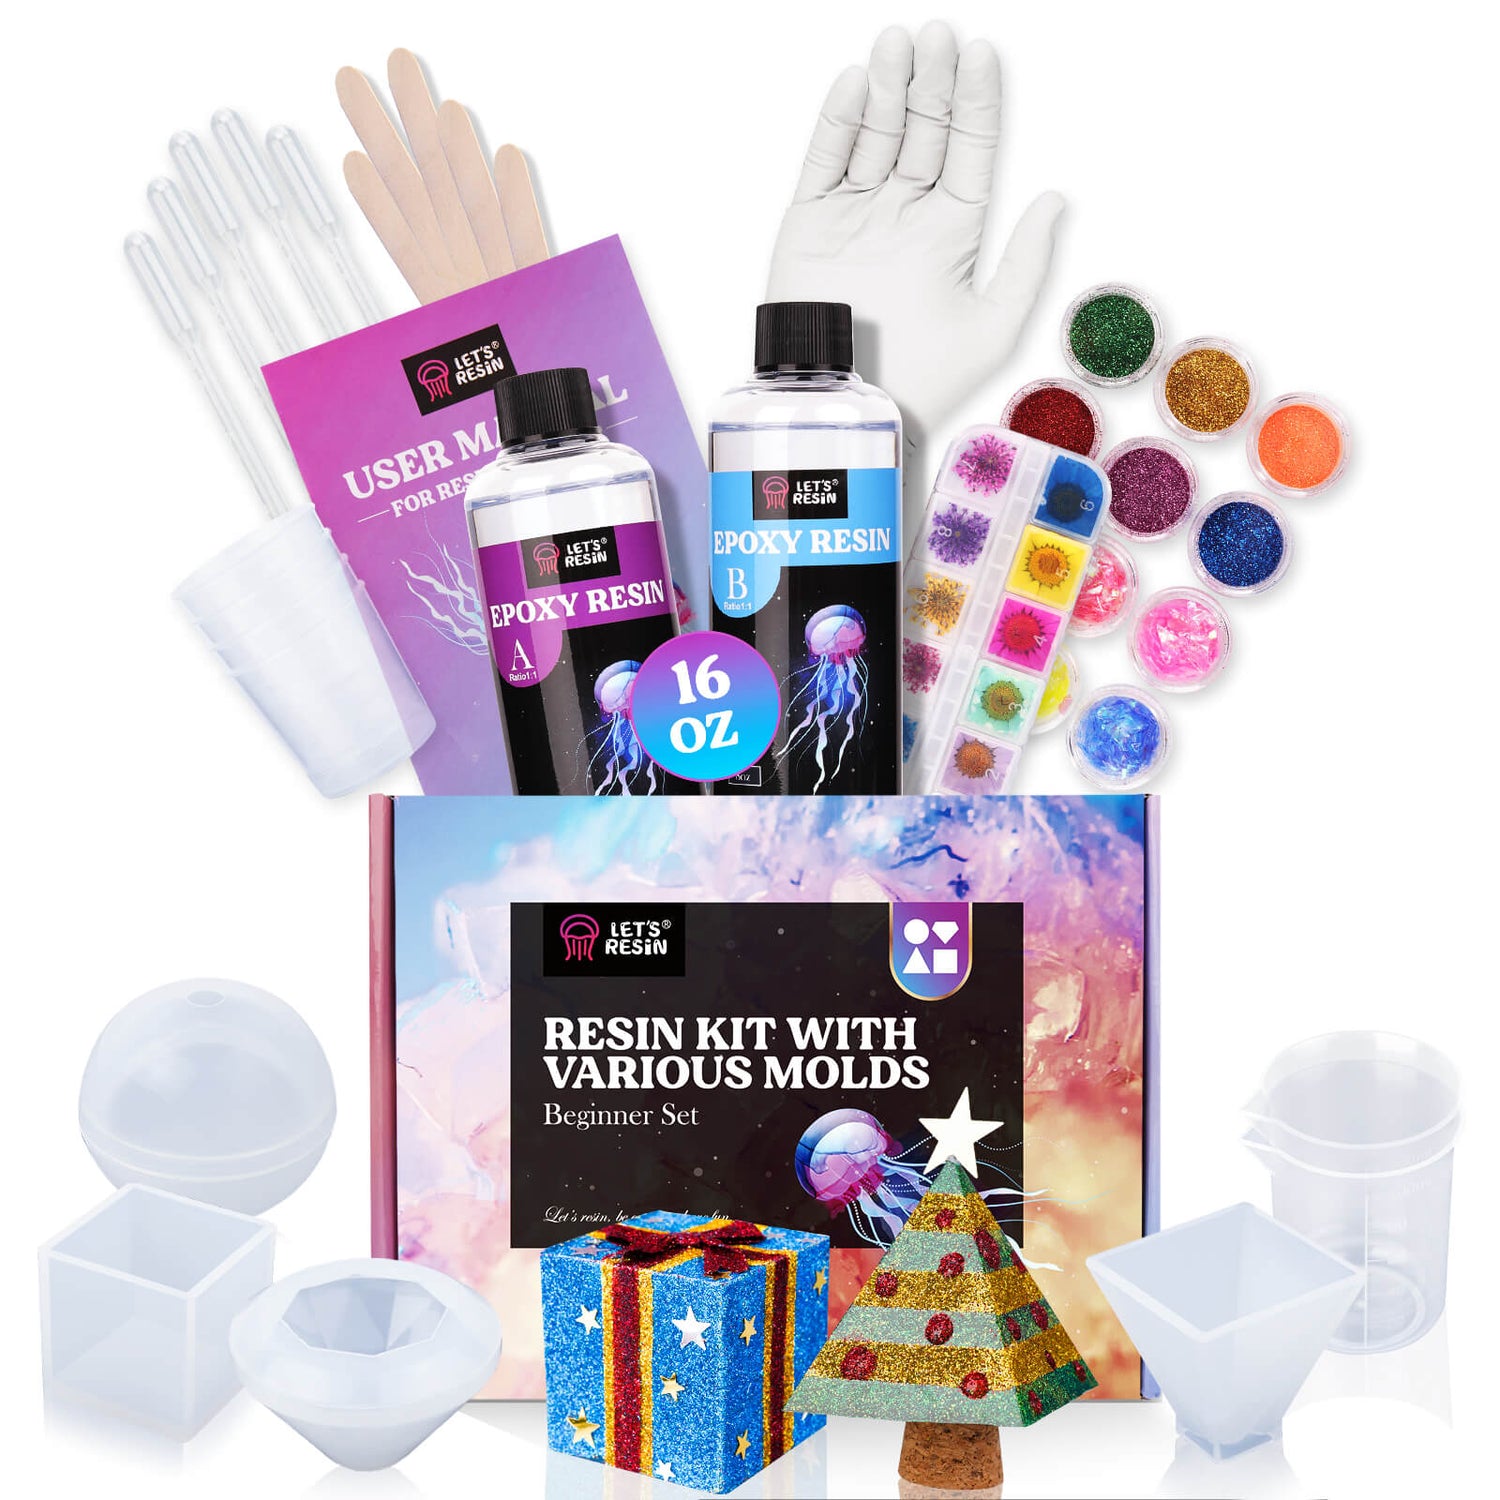 Beginners Lets resin UV Starter Kit 